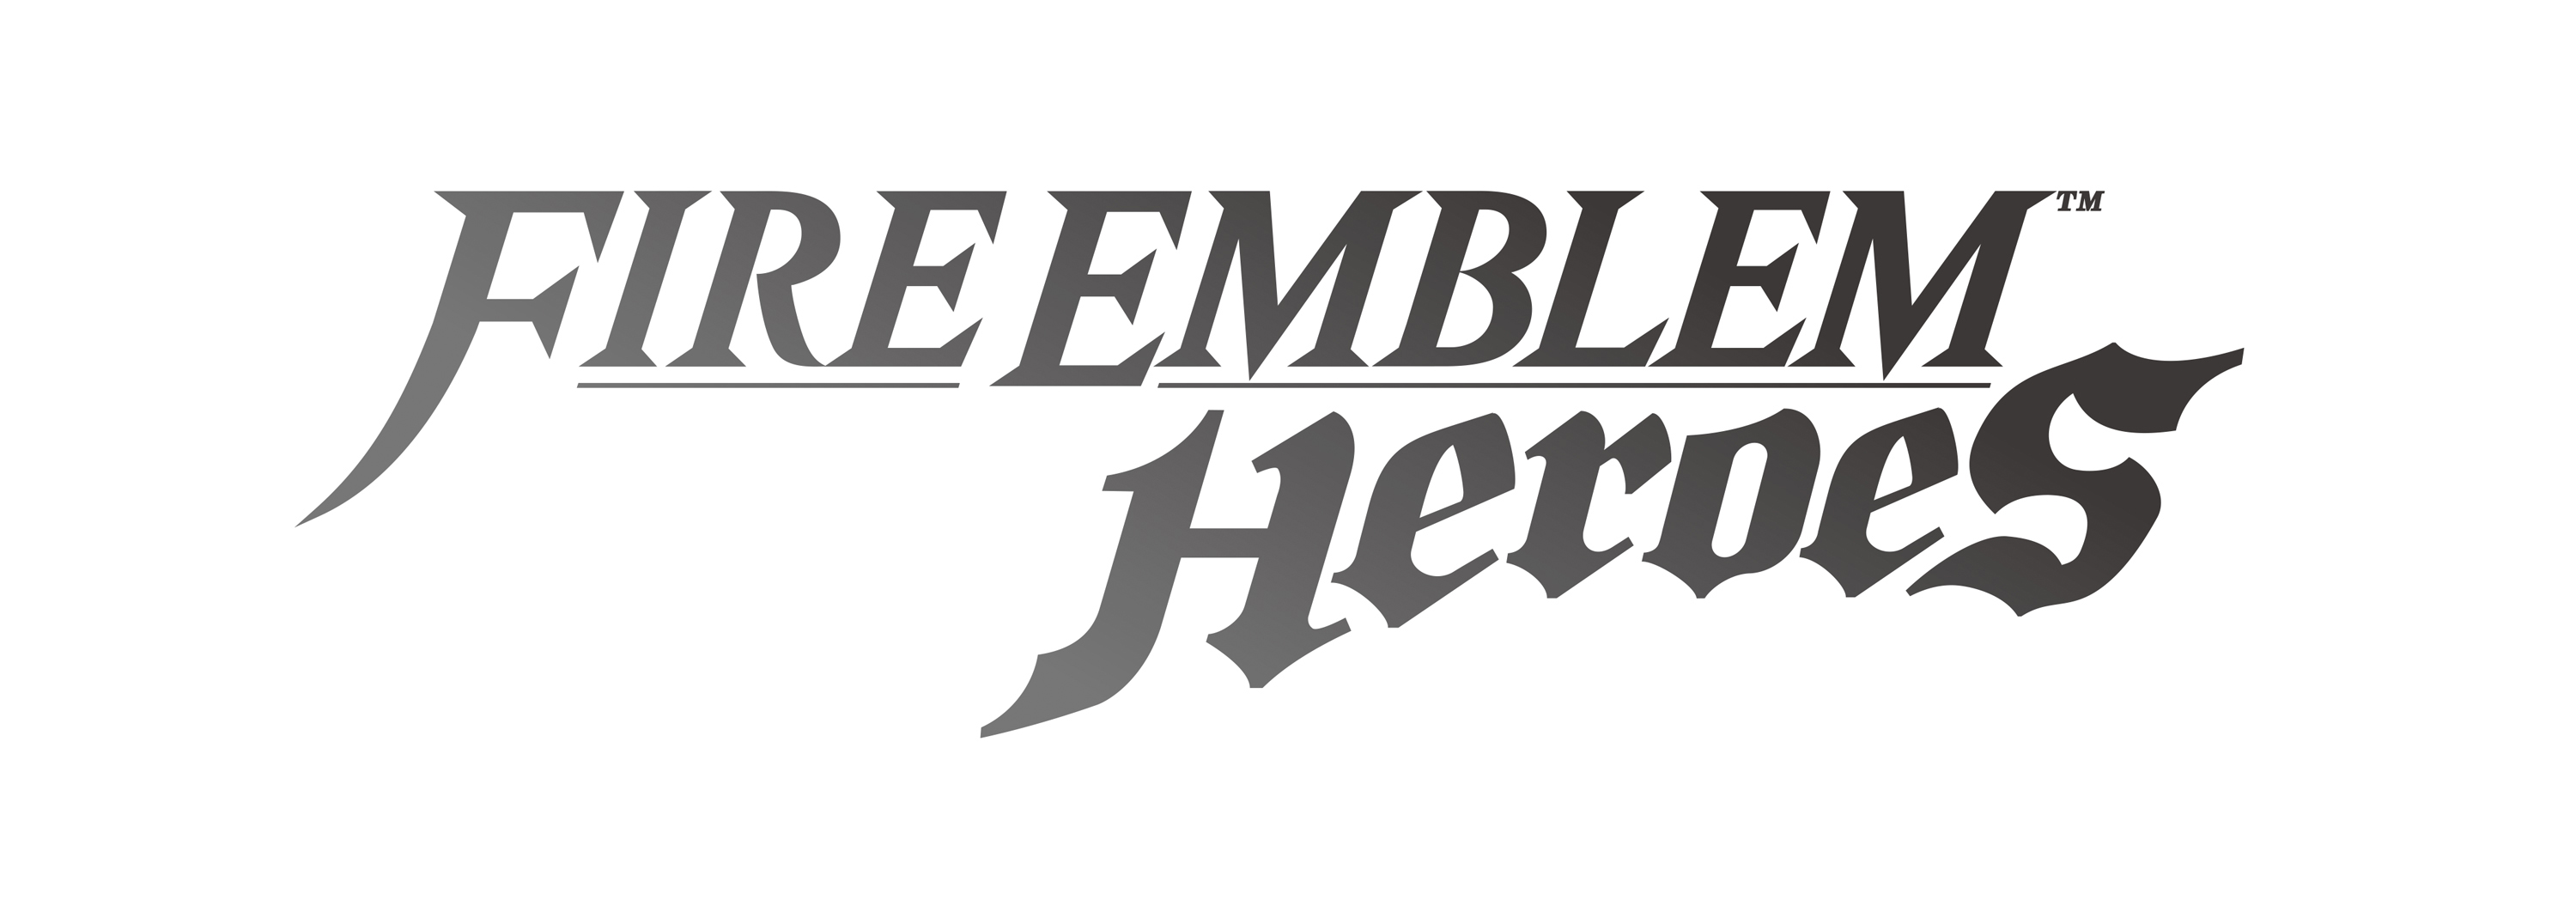 Heroes-Logo-2.jpg